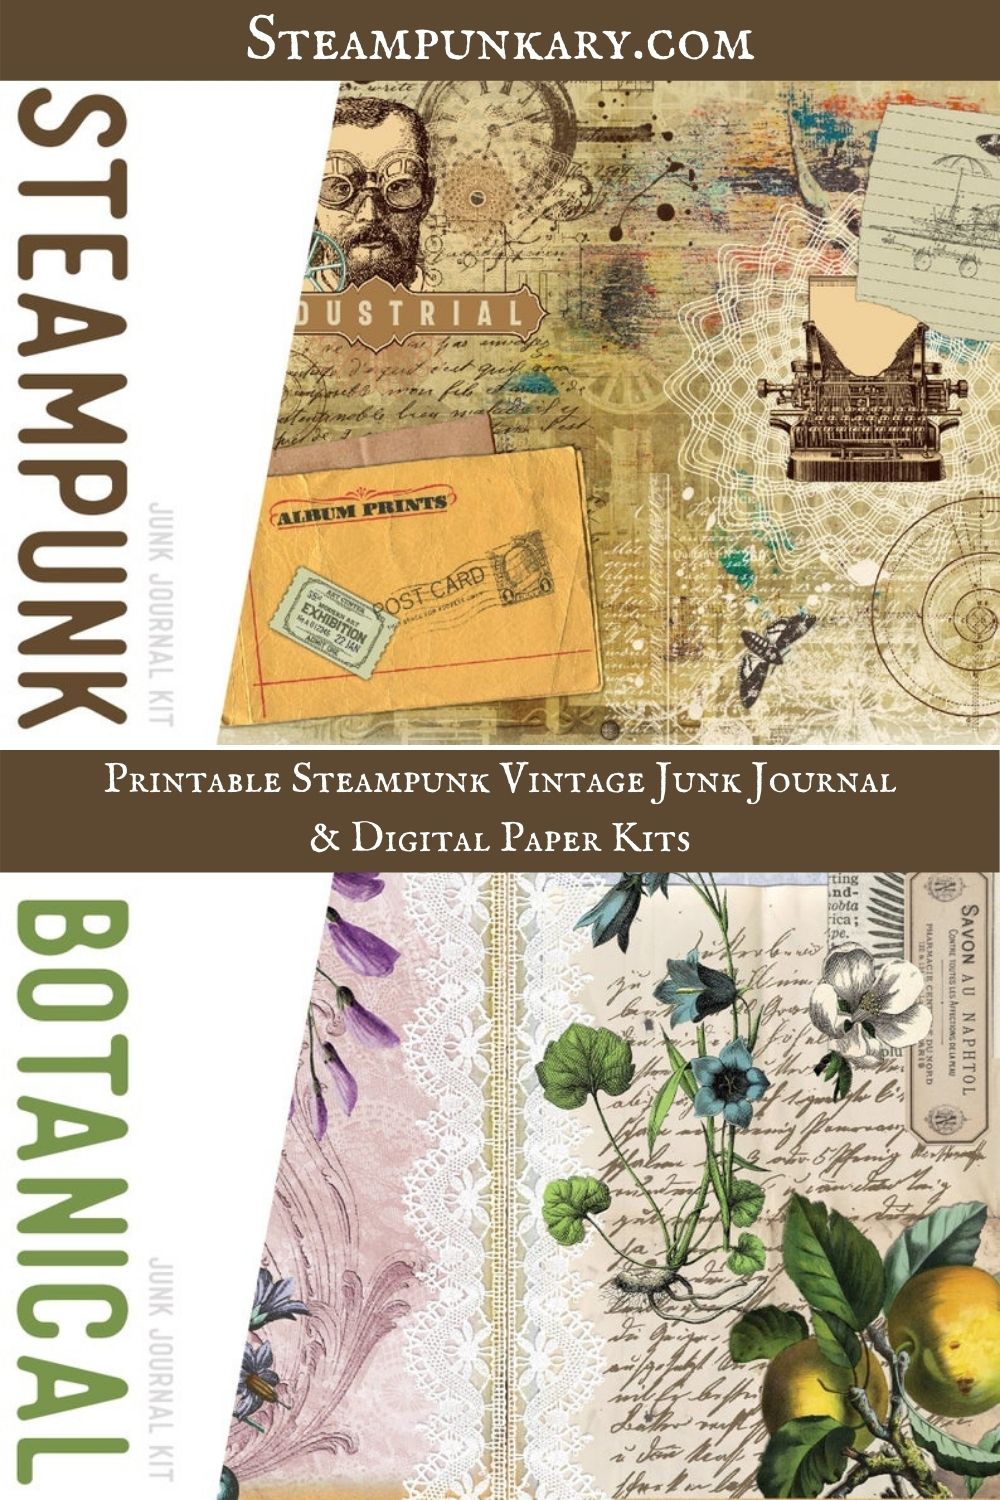 Printable Steampunk Vintage Junk Journal & Digital Paper Kits